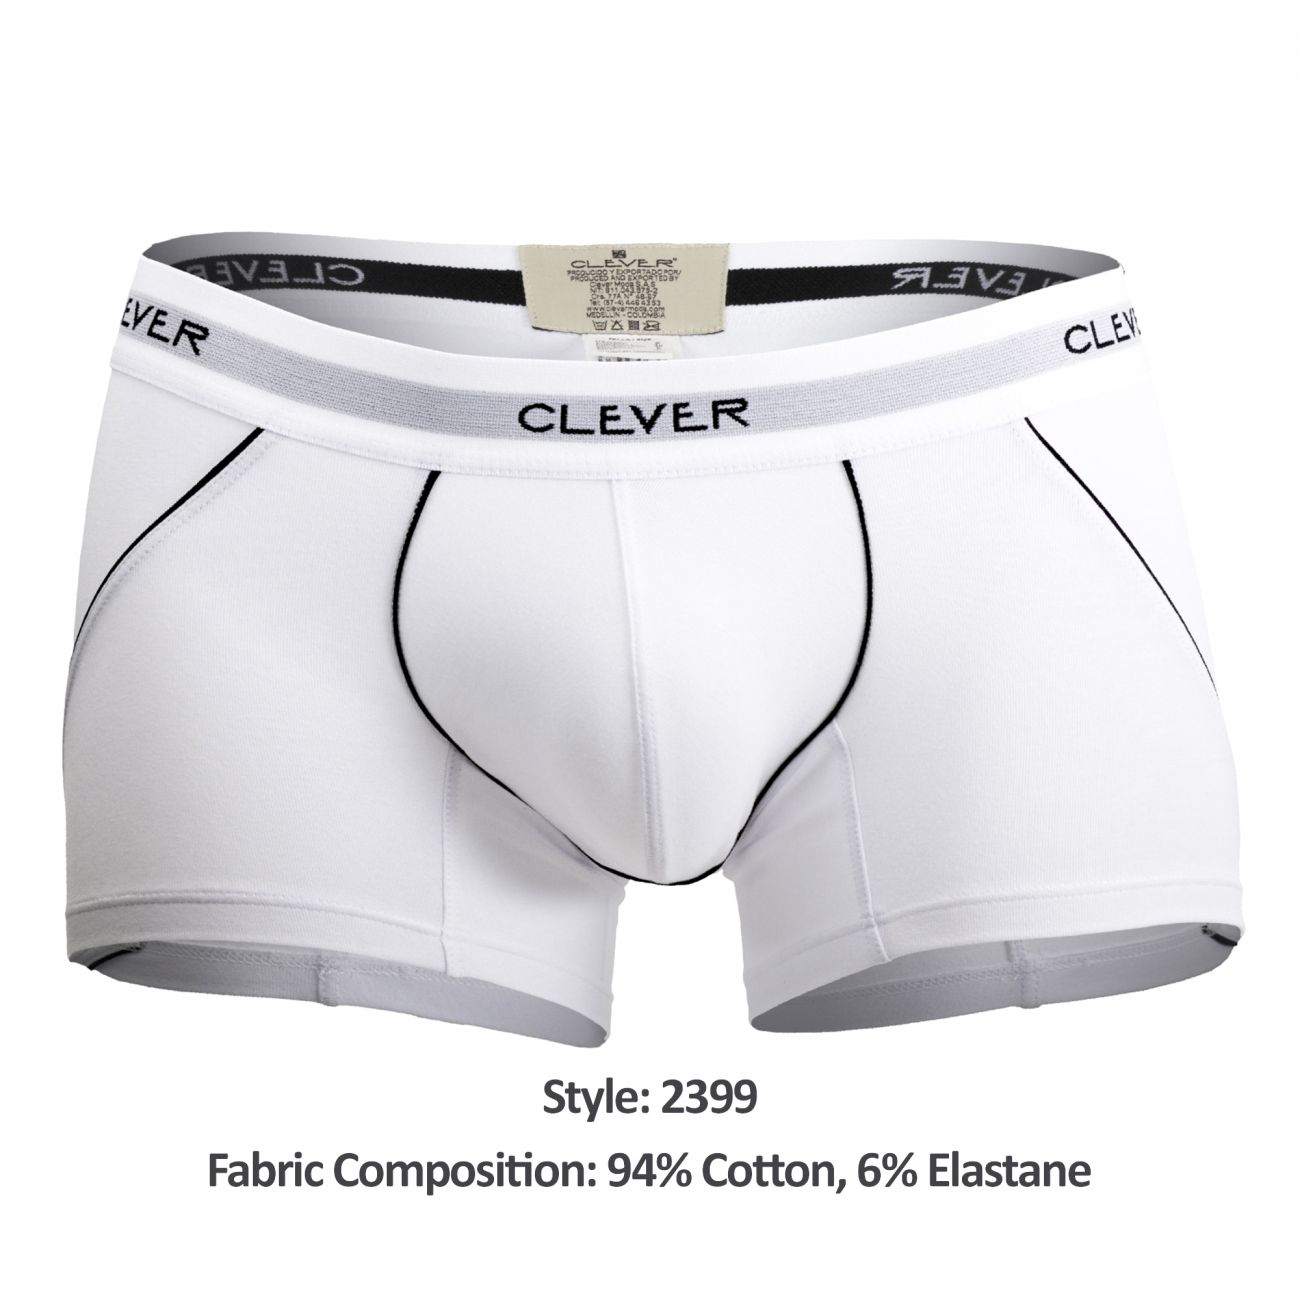 Mens Underwear: Clever 2399 Stunning Boxer Briefs | eBay